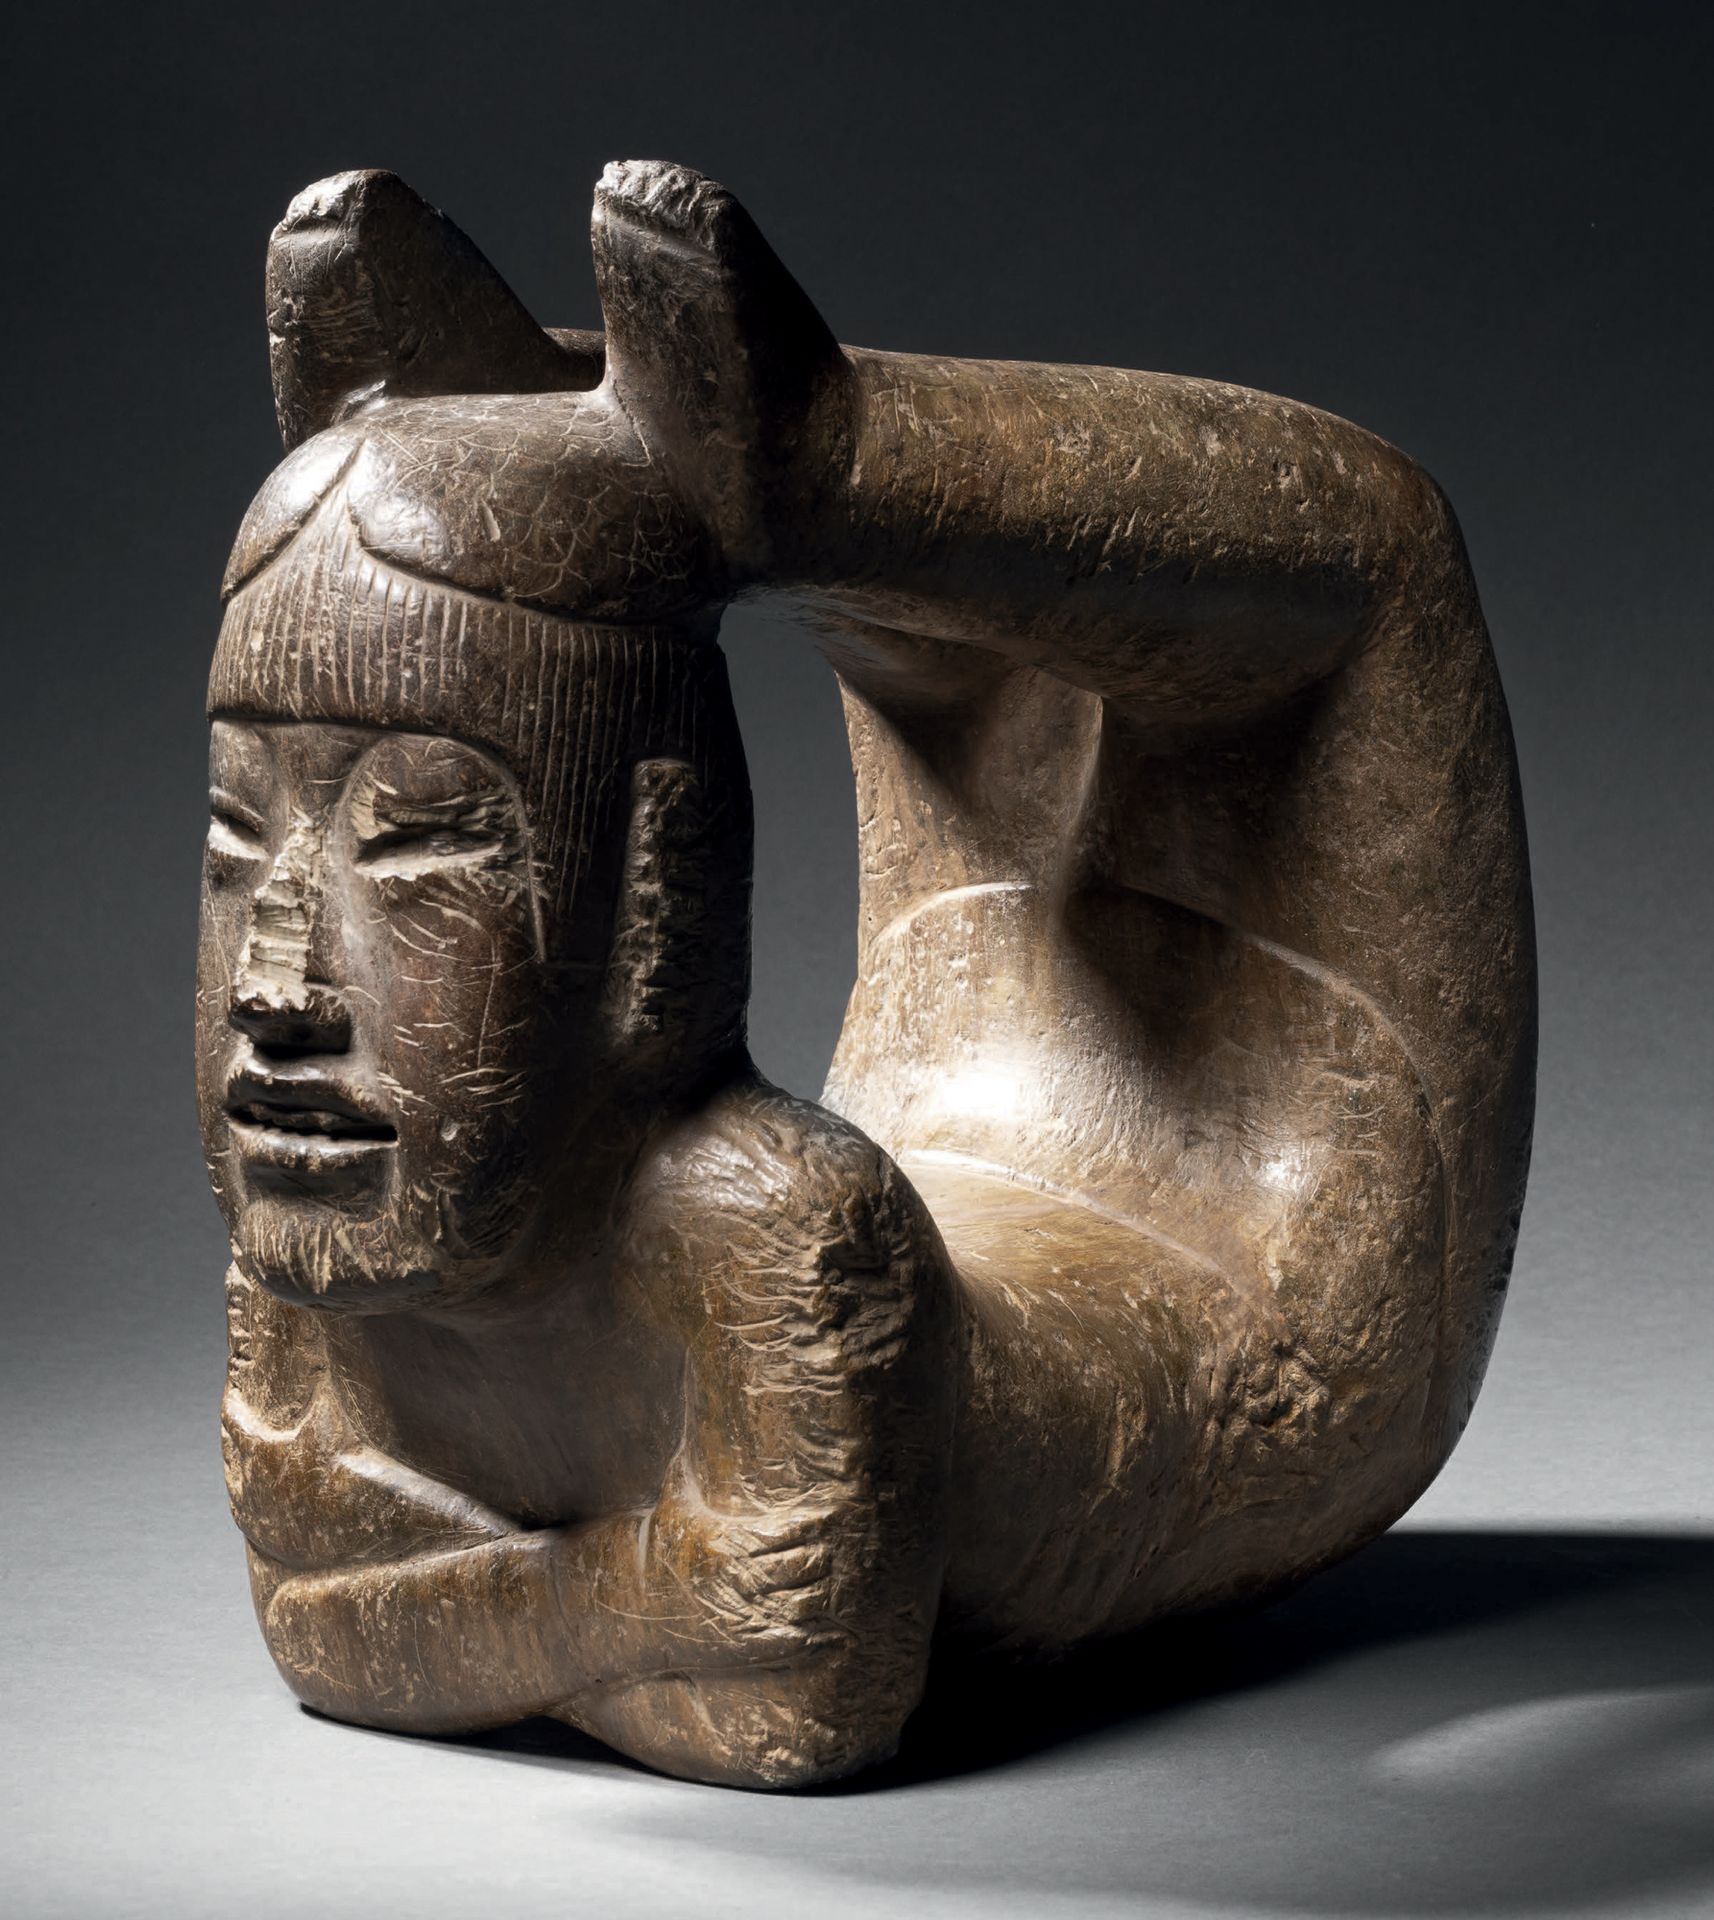 Null ECCEZIONALE ACROBATA
Cultura Olmeca, Messico
Preclassico medio, 900-400 a.C&hellip;